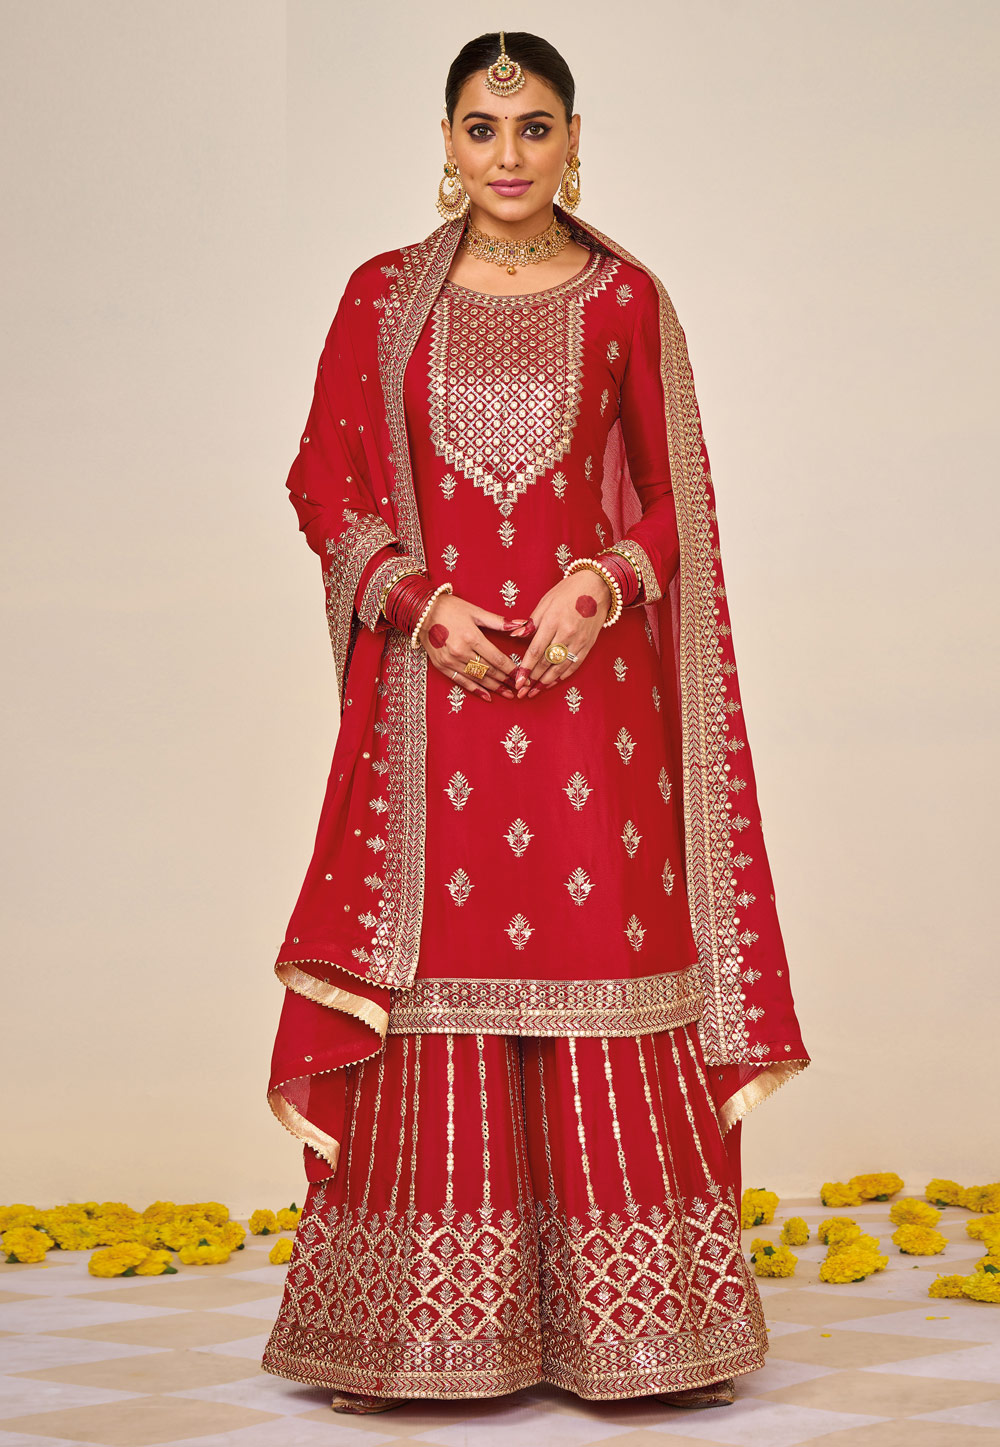 15 Latest Models of Red Salwar Kameez Designs for Stunning Look